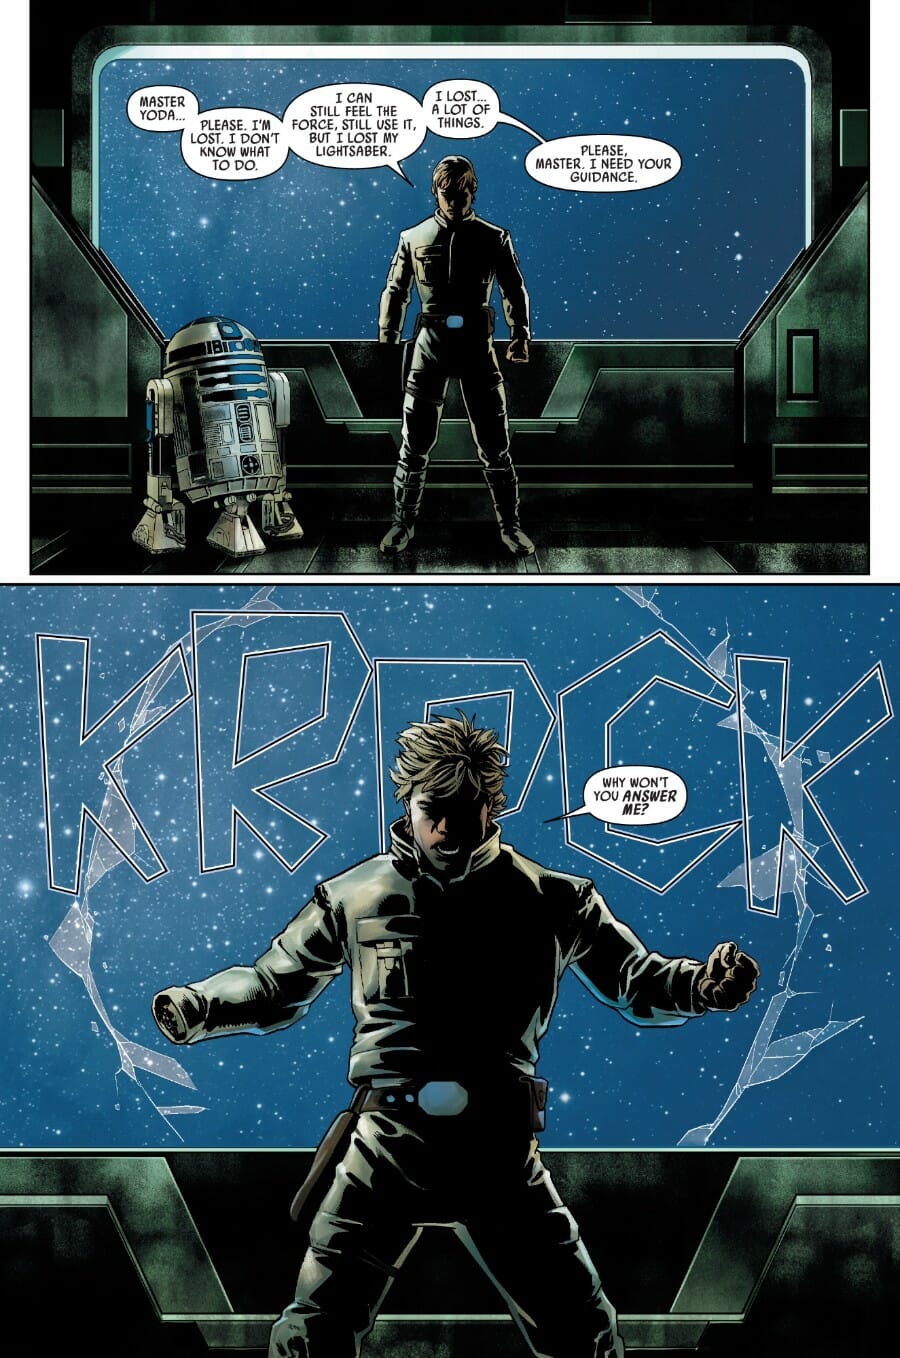 Star-Wars-1-Luke-Skywalker-Anger-Over-Obi-Wan-Kenobi.jpg